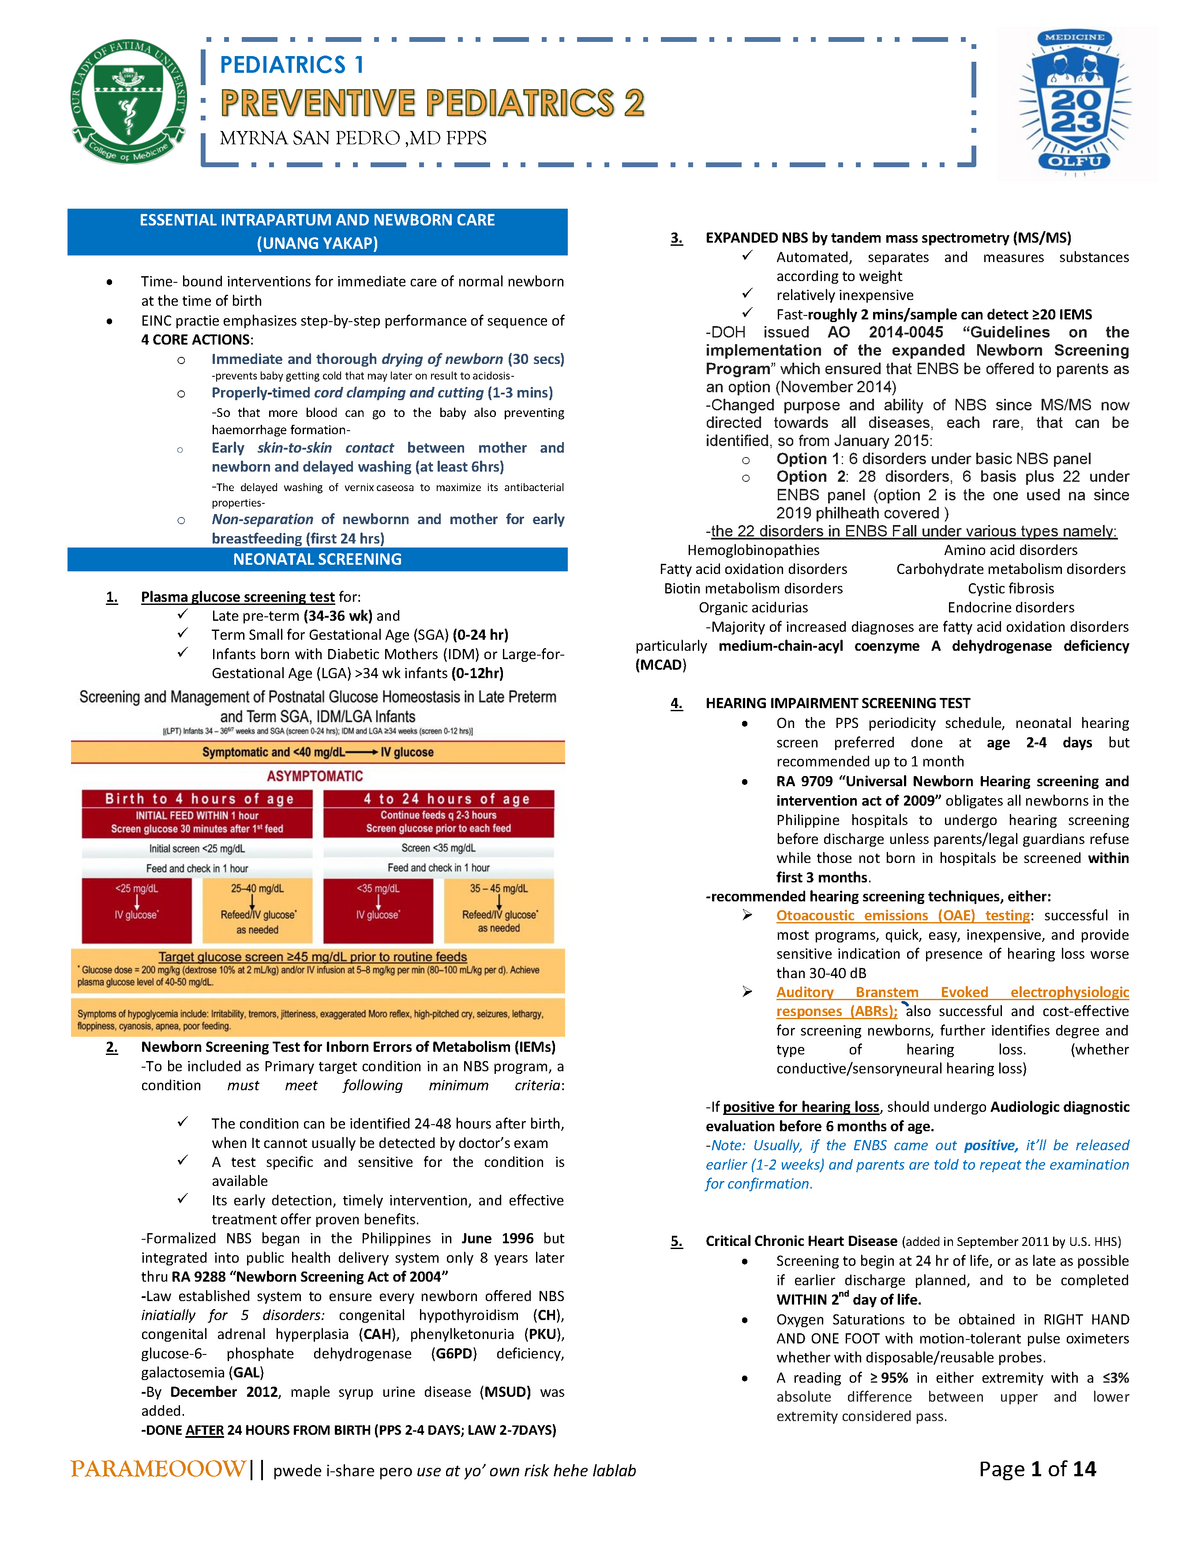 Preventive Pediatrics 2 Lecture Notes from - TITLE MYRNA SAN PEDRO ,MD ...